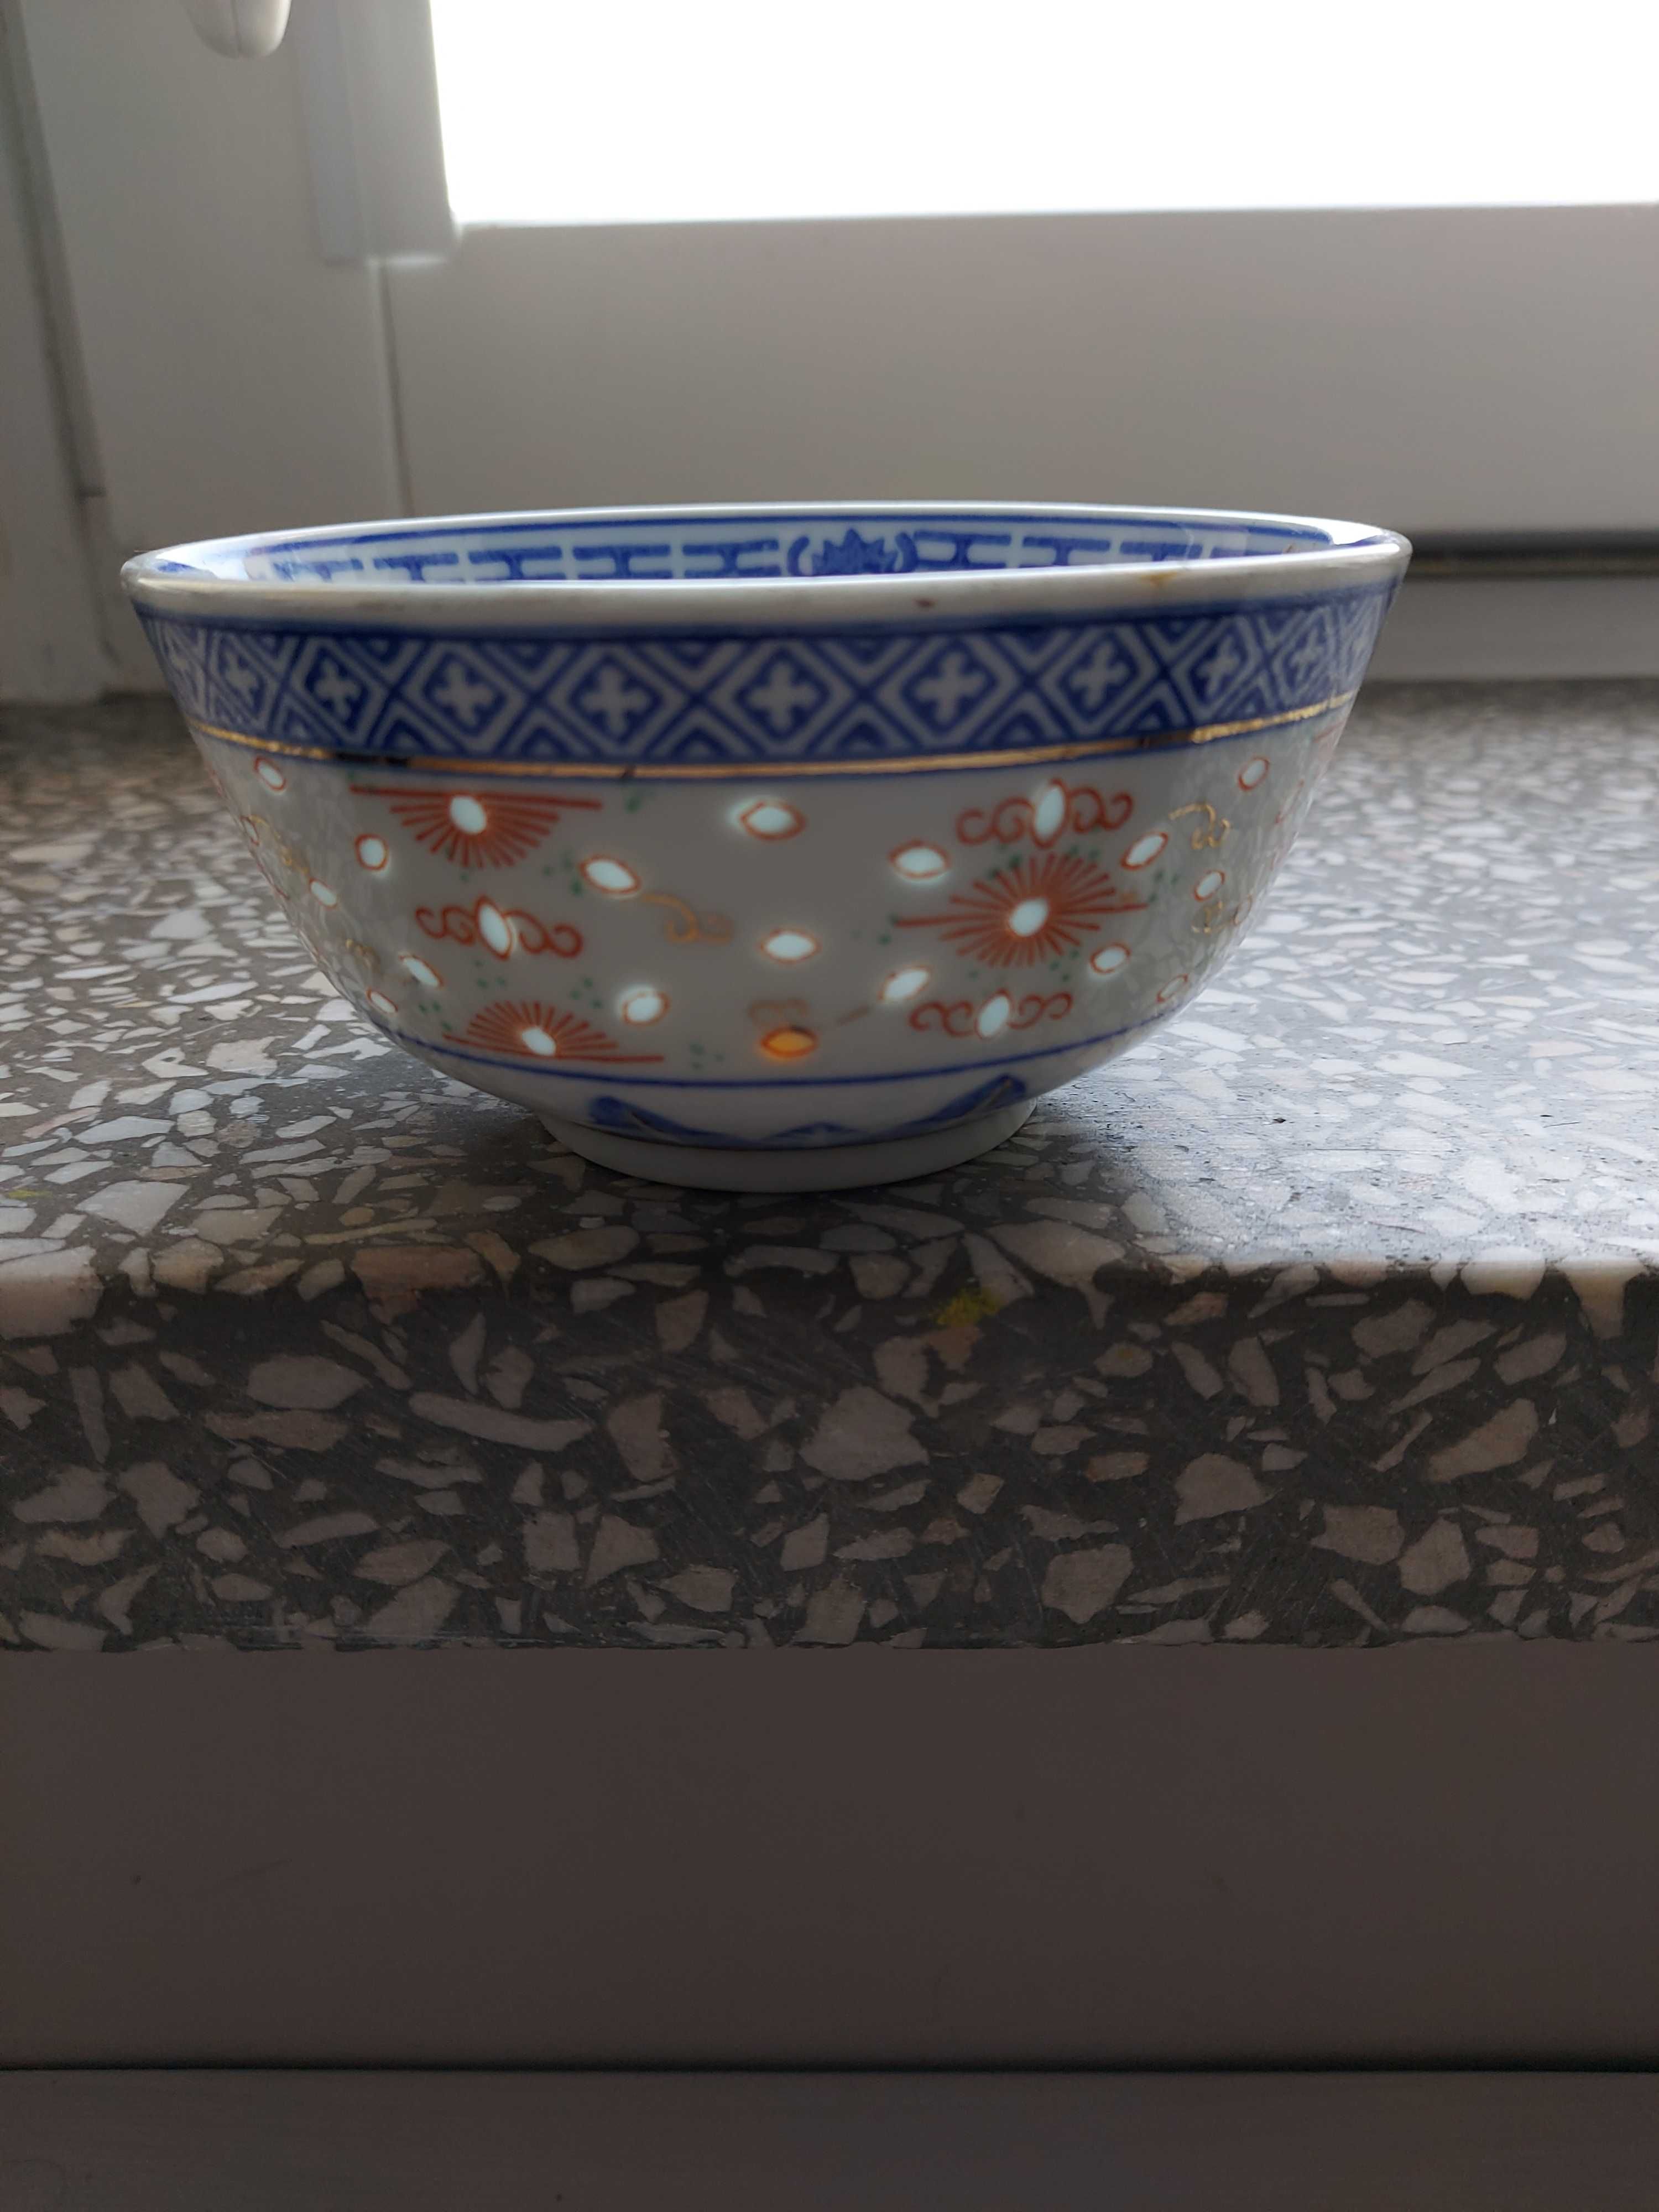 Miseczka chińska porcelanowa tzw. ryżowa używana